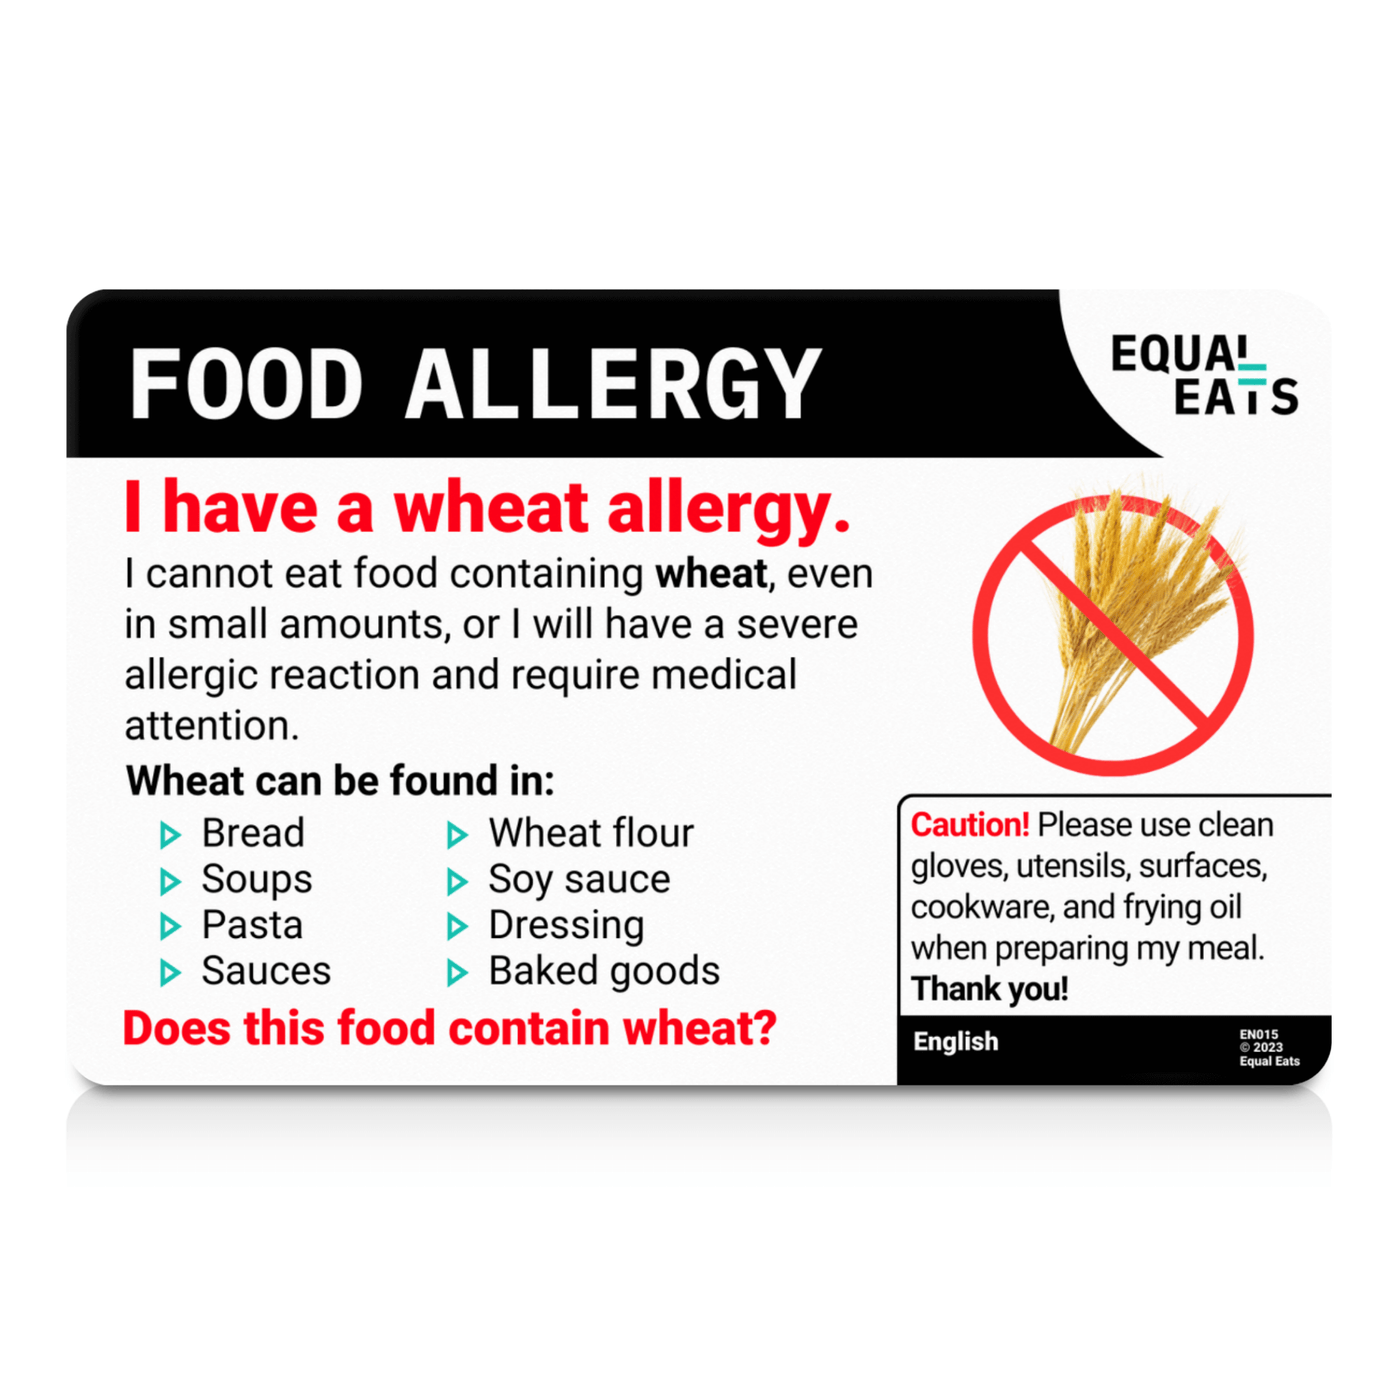 Romanian Wheat Allergy Card